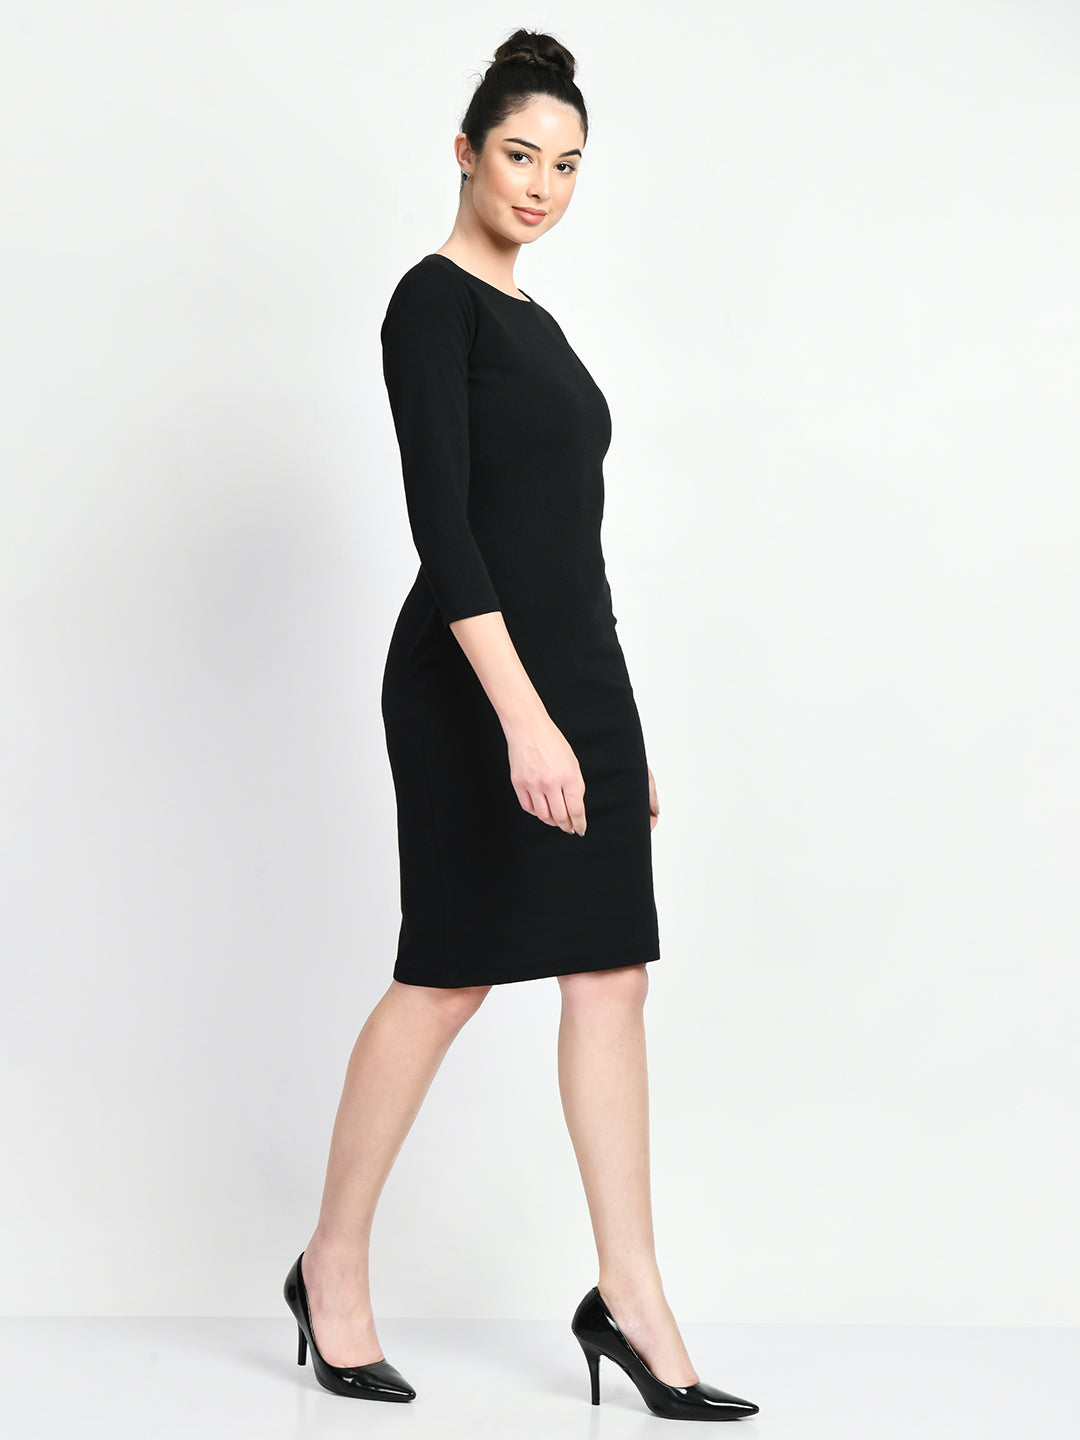 Black Long Sleeve Dresses for Women - Lulus